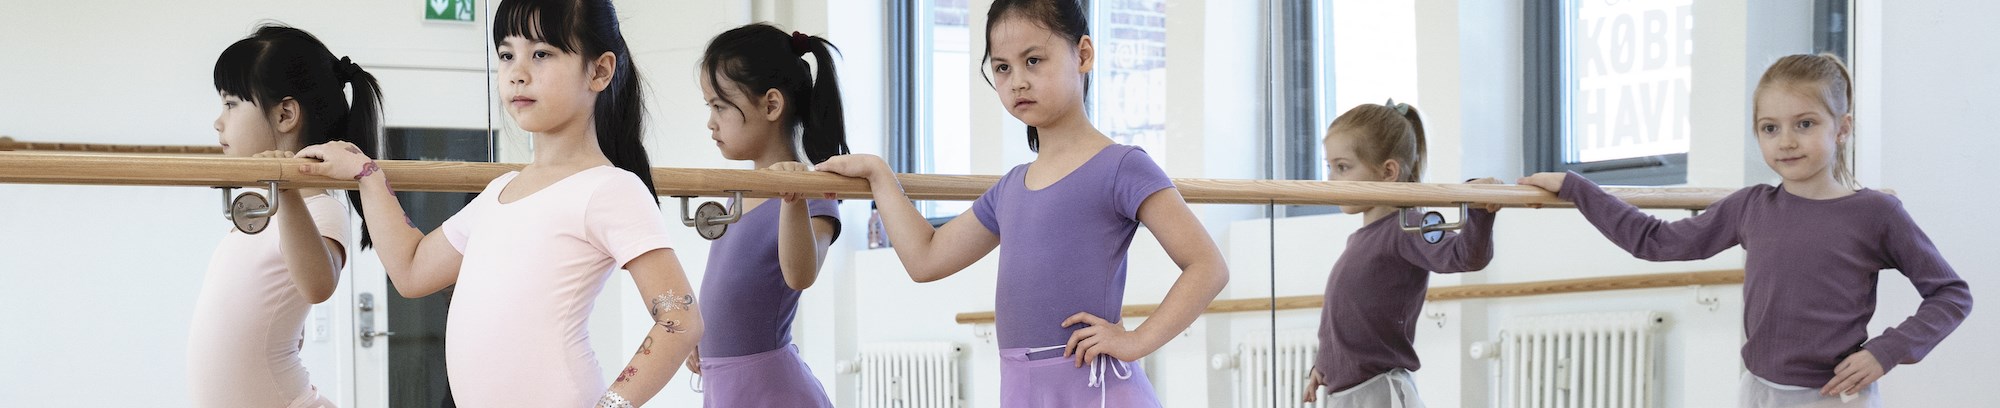 billede af tre piger der træner ballet